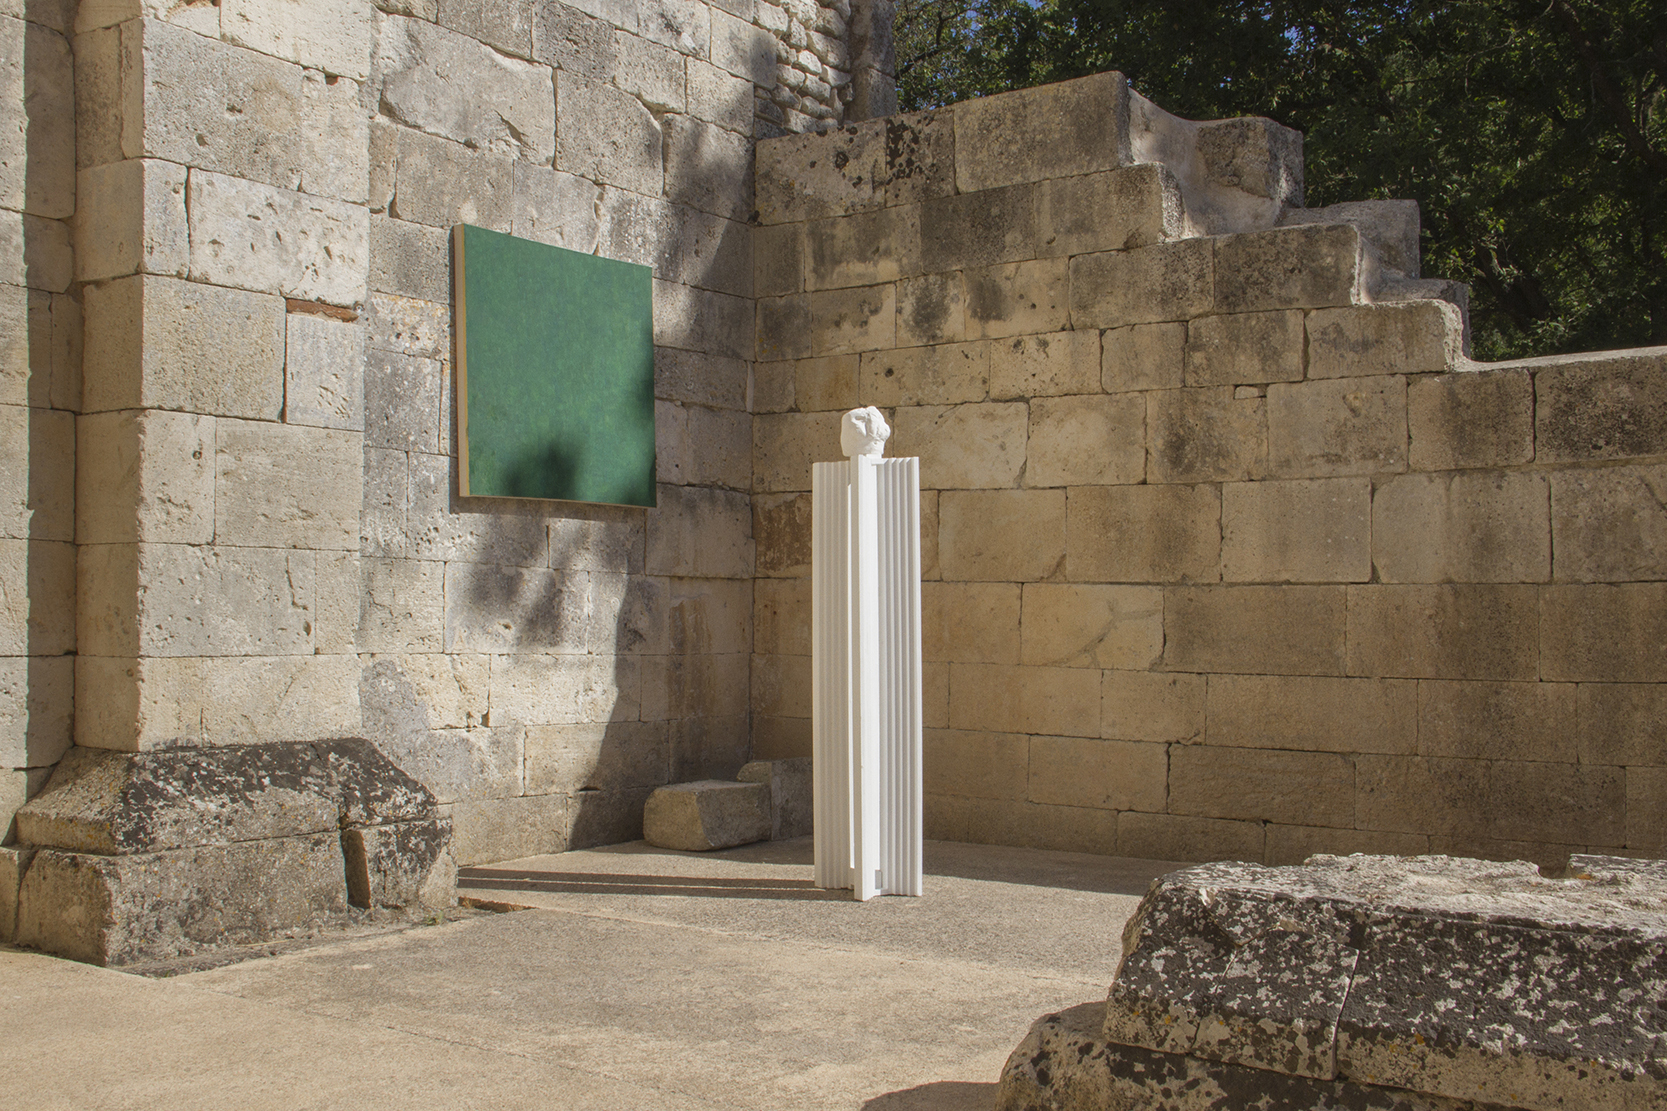 2 Montecristo Project - La Costante Resistenziale, Ruins of San Nicola di Silanis, installation view